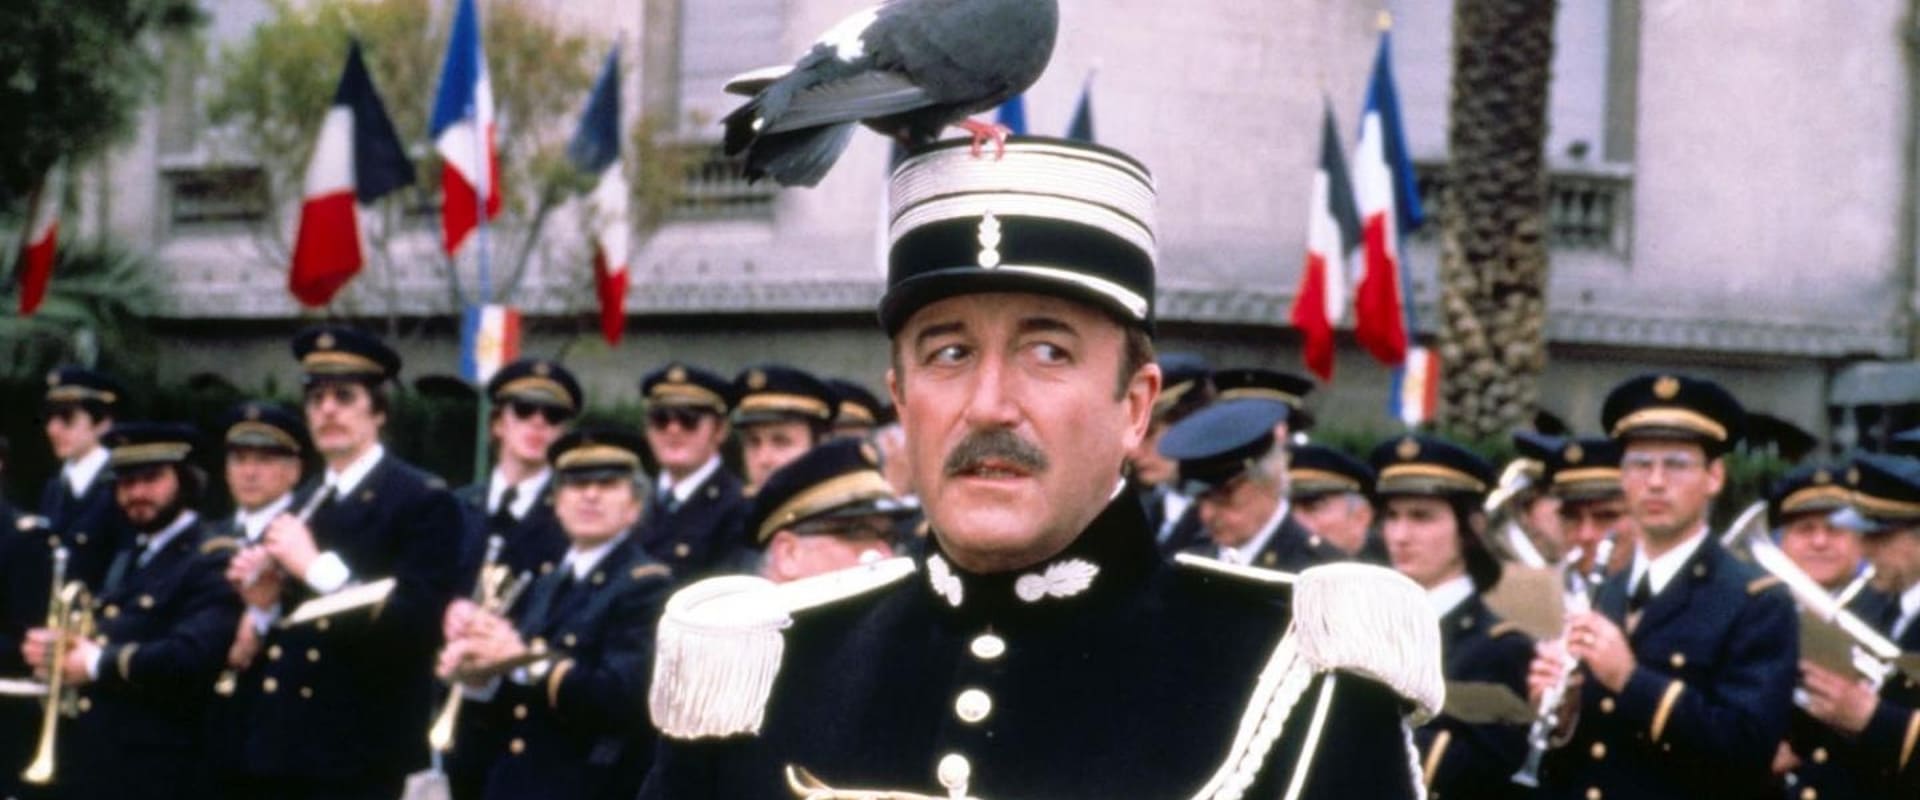 Inspektor Clouseau - Der irre Flic mit dem heißen Blick